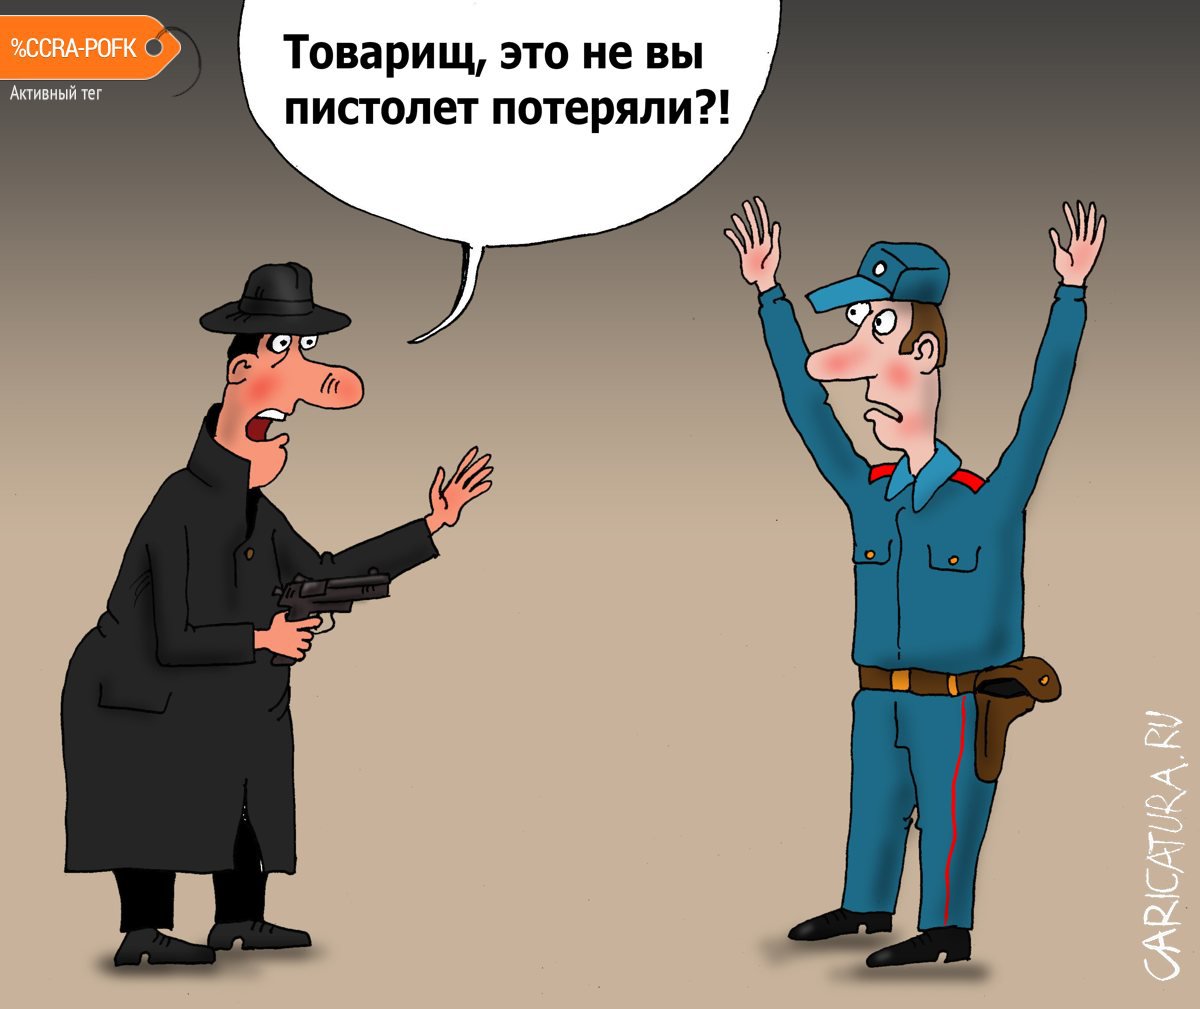 Карикатура "Ствол", Валерий Тарасенко